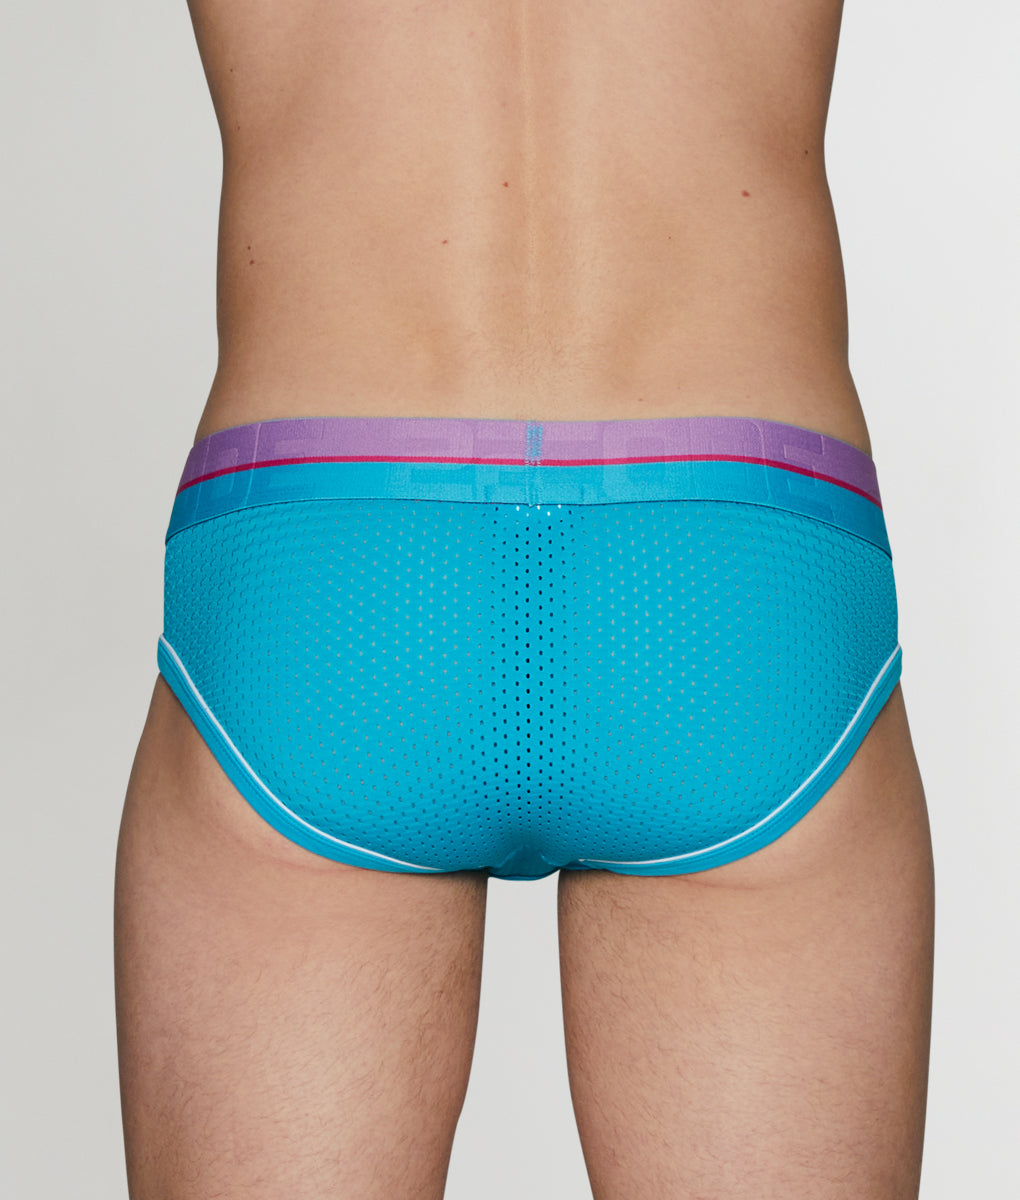 2(X)ist SLIQ COTTON MESH underwear (brief), size L, Men's Fashion, Bottoms,  New Underwear on Carousell